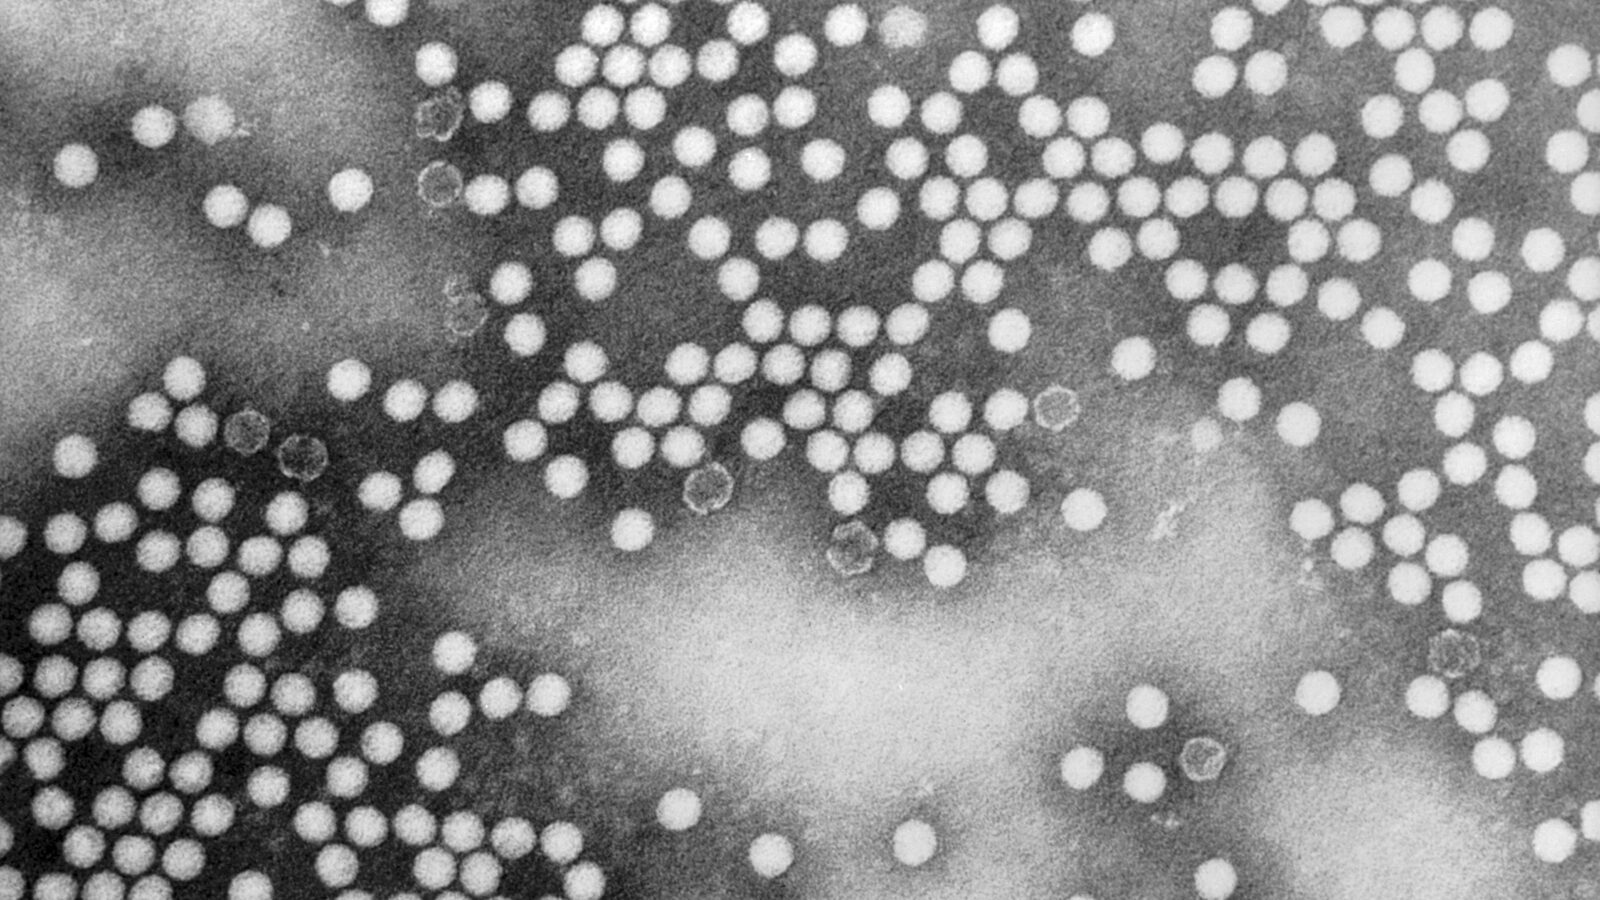 Mỹ ghi nhận ca bệnh bại liệt đầu tiên trong gần một thập niên - ảnh 1